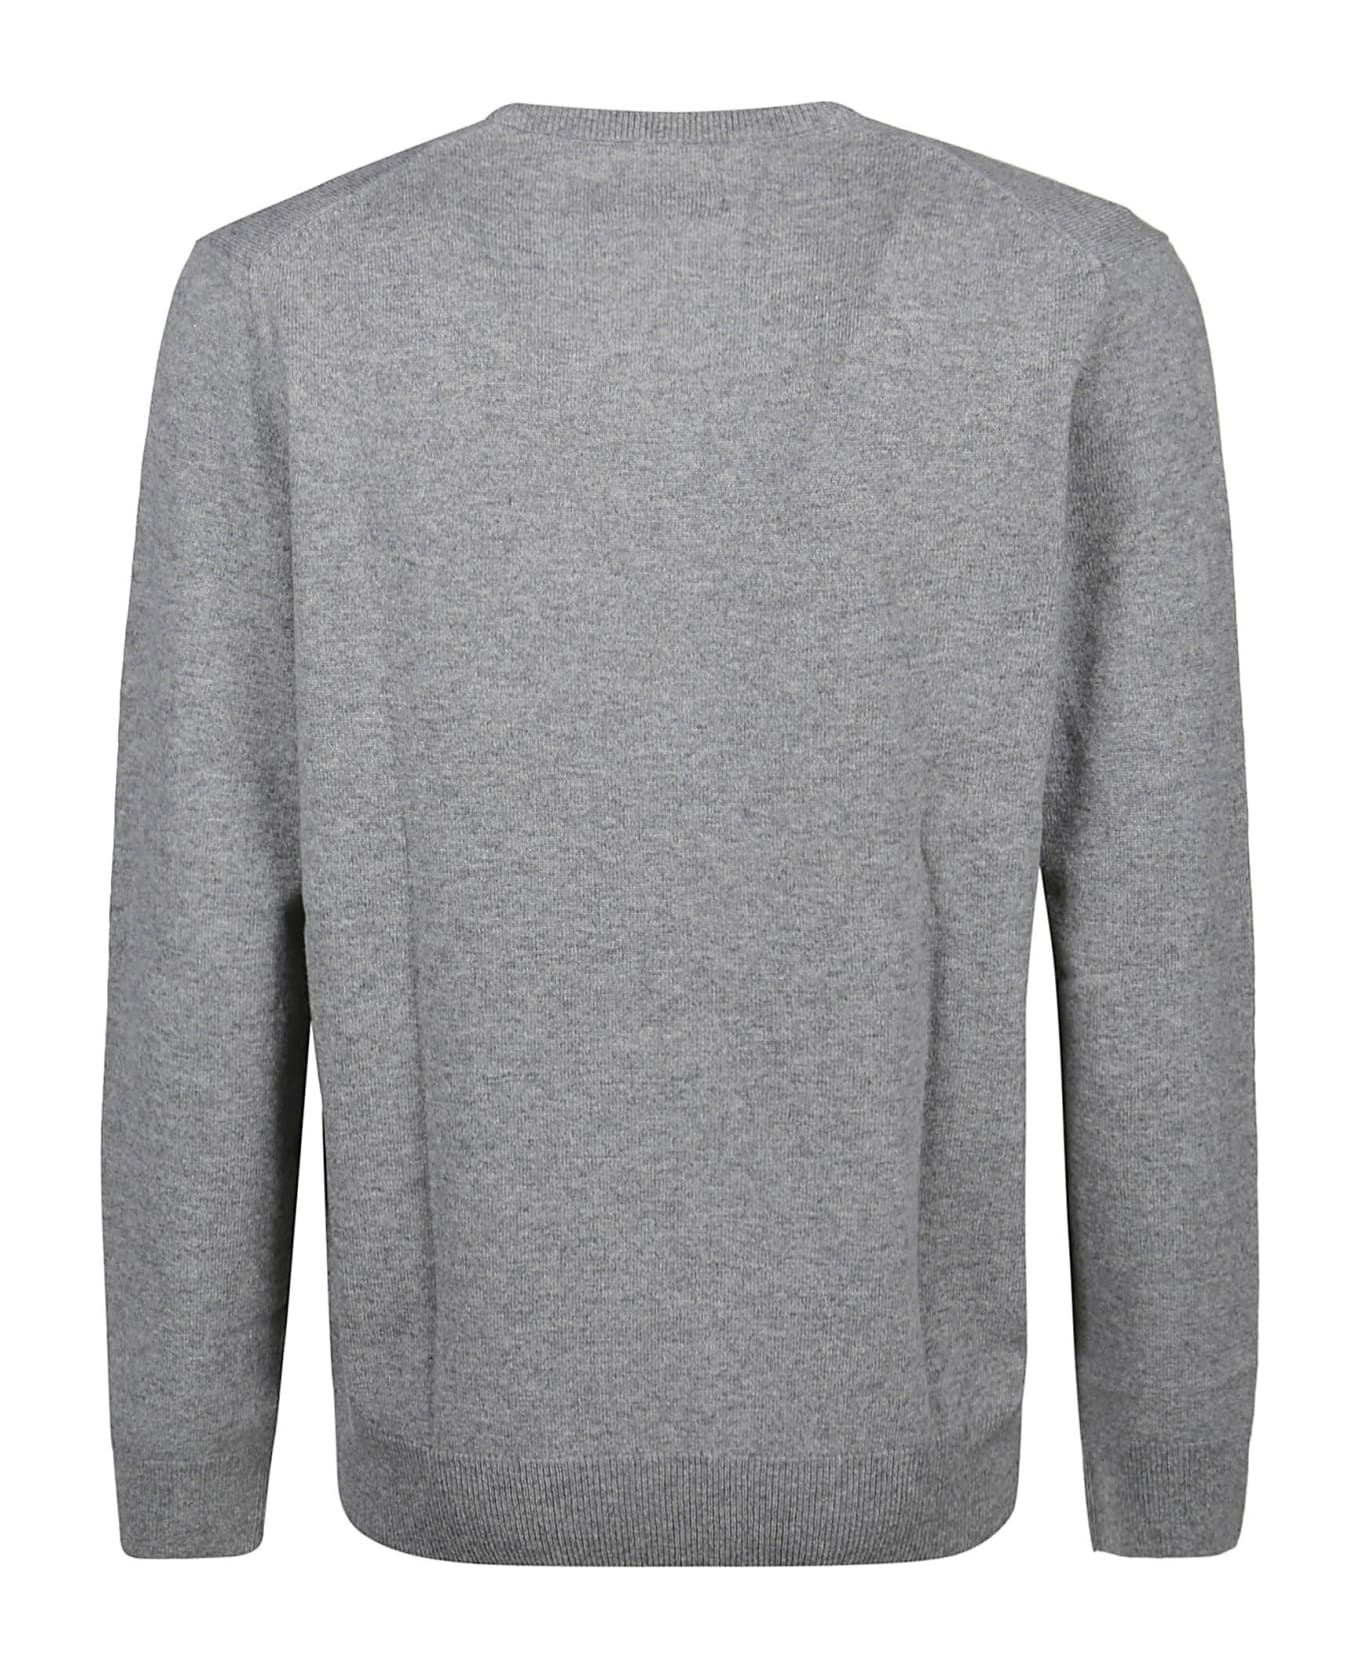 Polo Ralph Lauren Long Sleeve Sweater